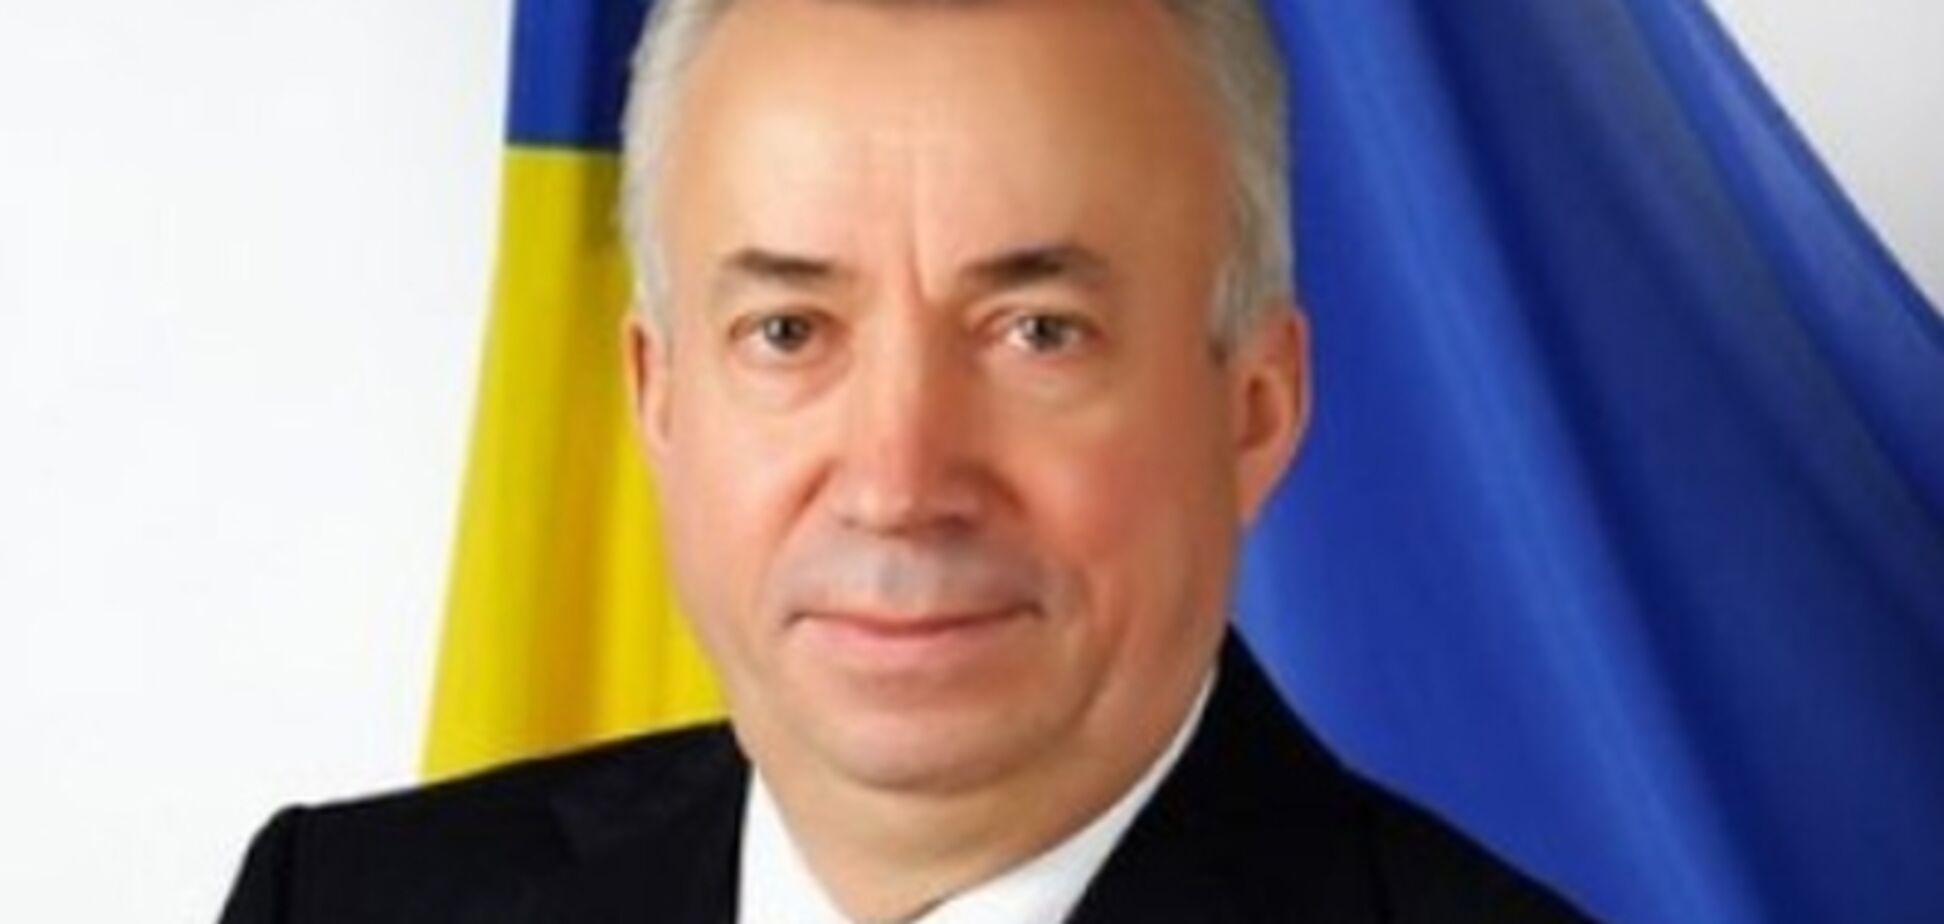 Мэр Донецка Лукьянченко отказался от предложения стать губернатором